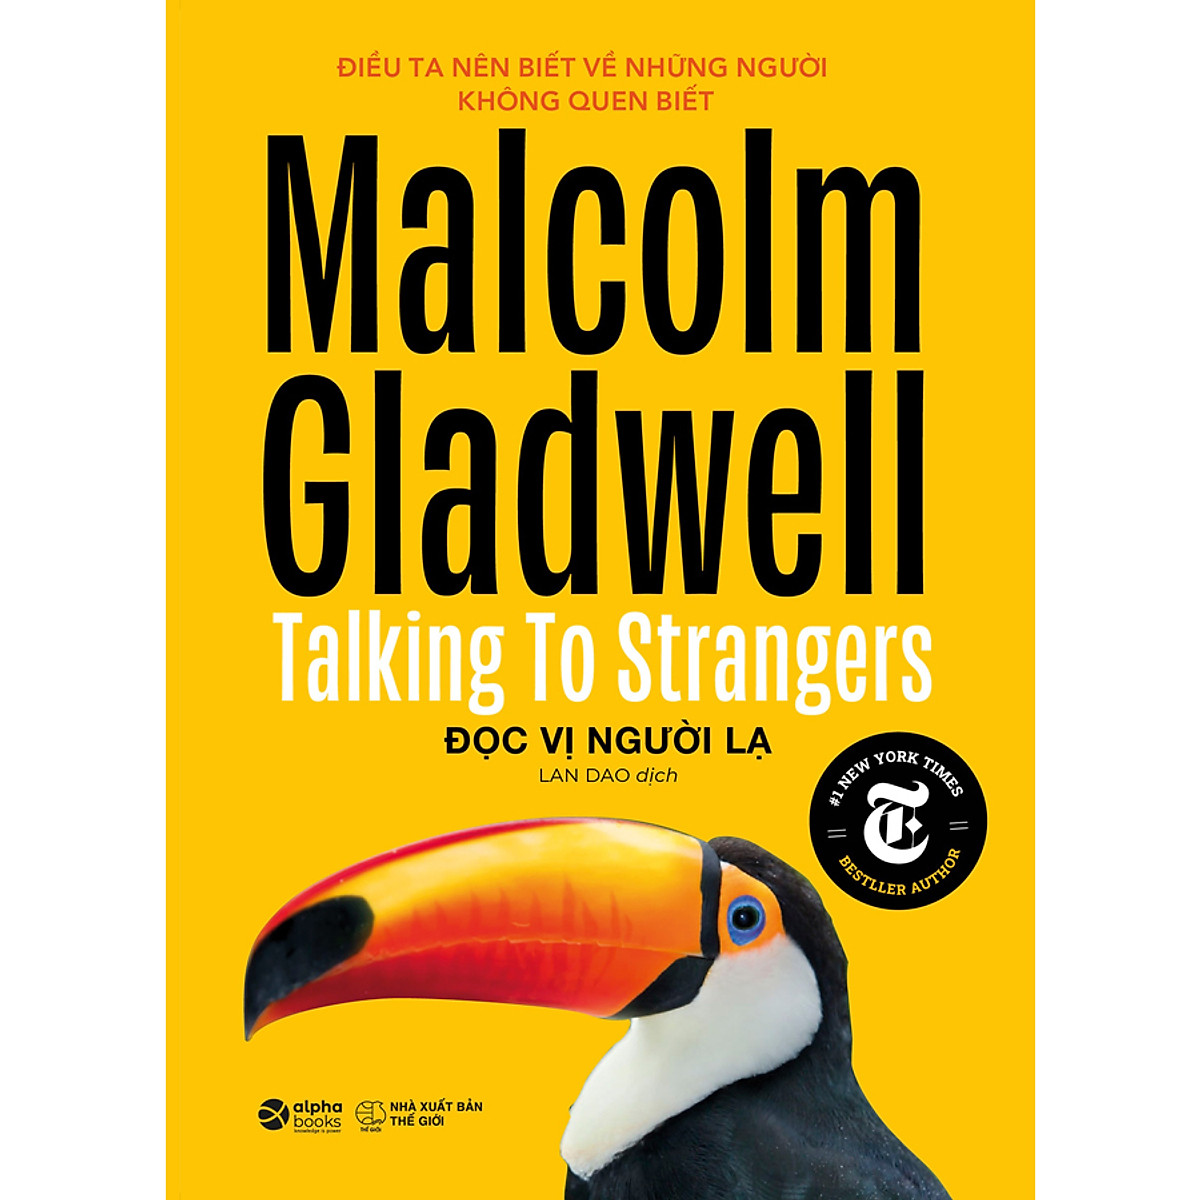 Combo 6 Cuốn Sách Của Tác Giả Malcolm Gladwell: Chú Chó Nhìn Thấy Gì + David & Goliath + Điểm Bùng Phát + Đọc Vị Người Lạ + Những Kẻ Xuất Chúng + Trong Chớp Mắt